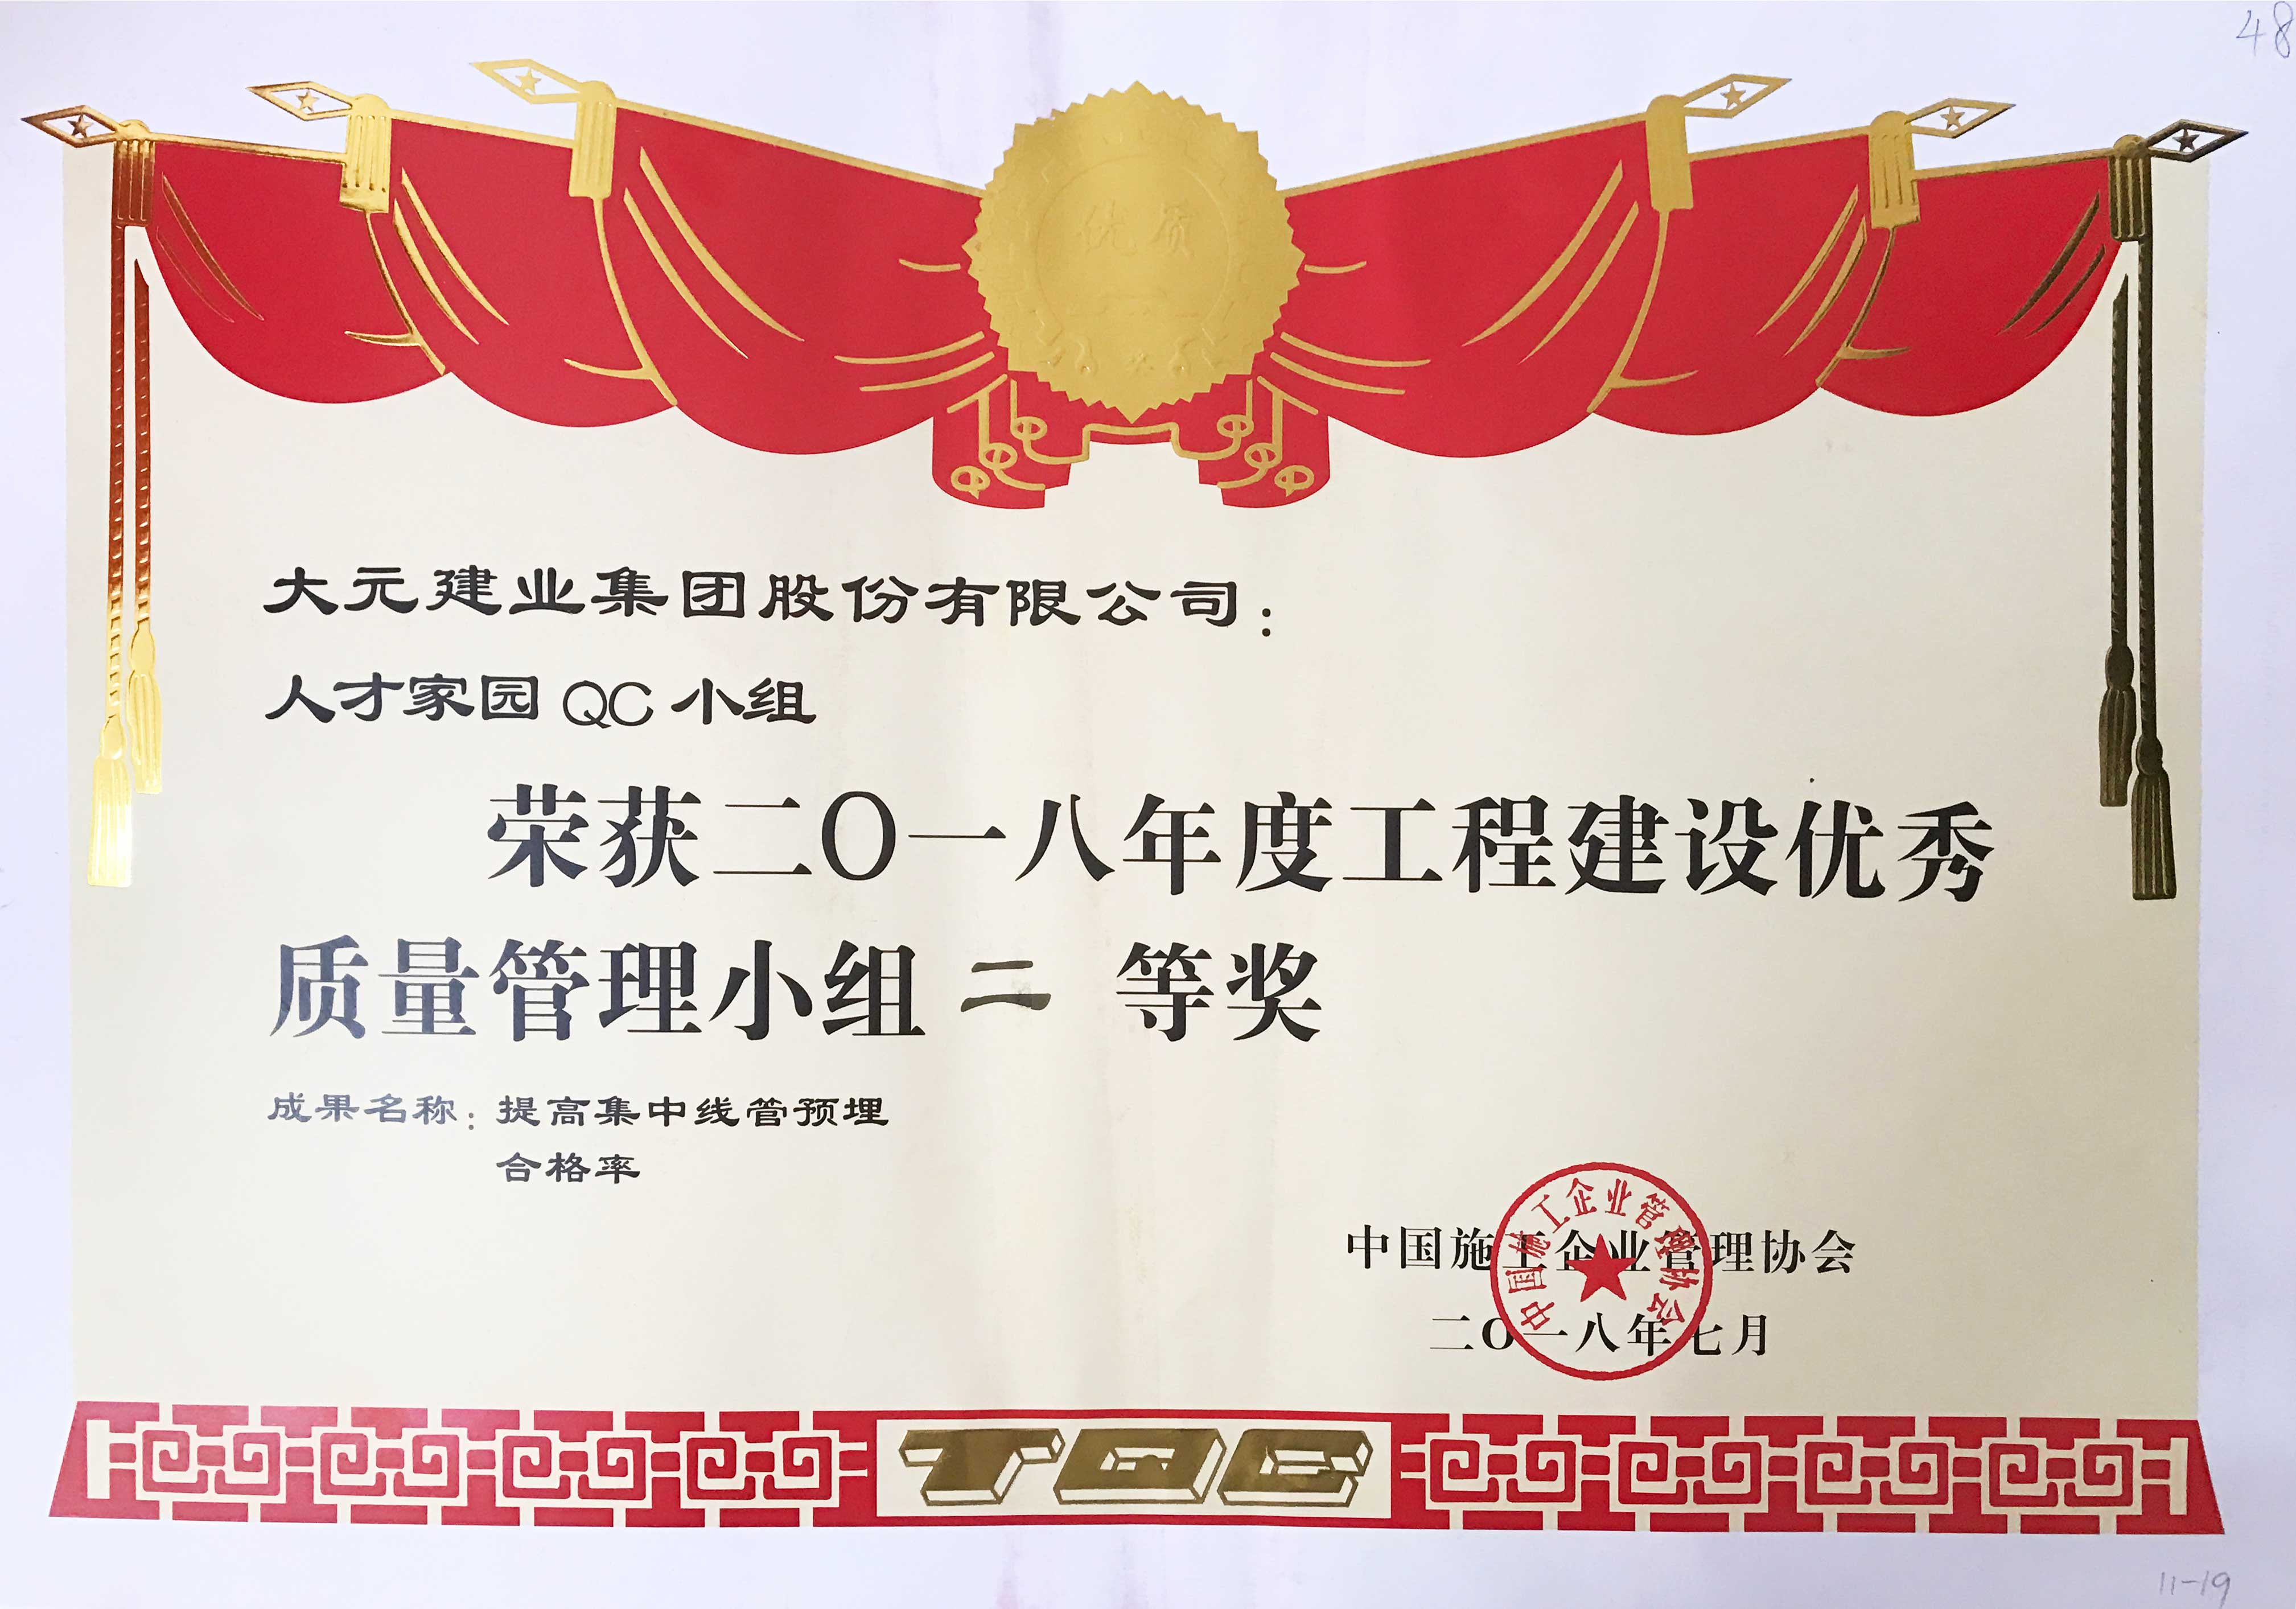 大元集团荣获“国家级优秀质量管理小组二等奖”